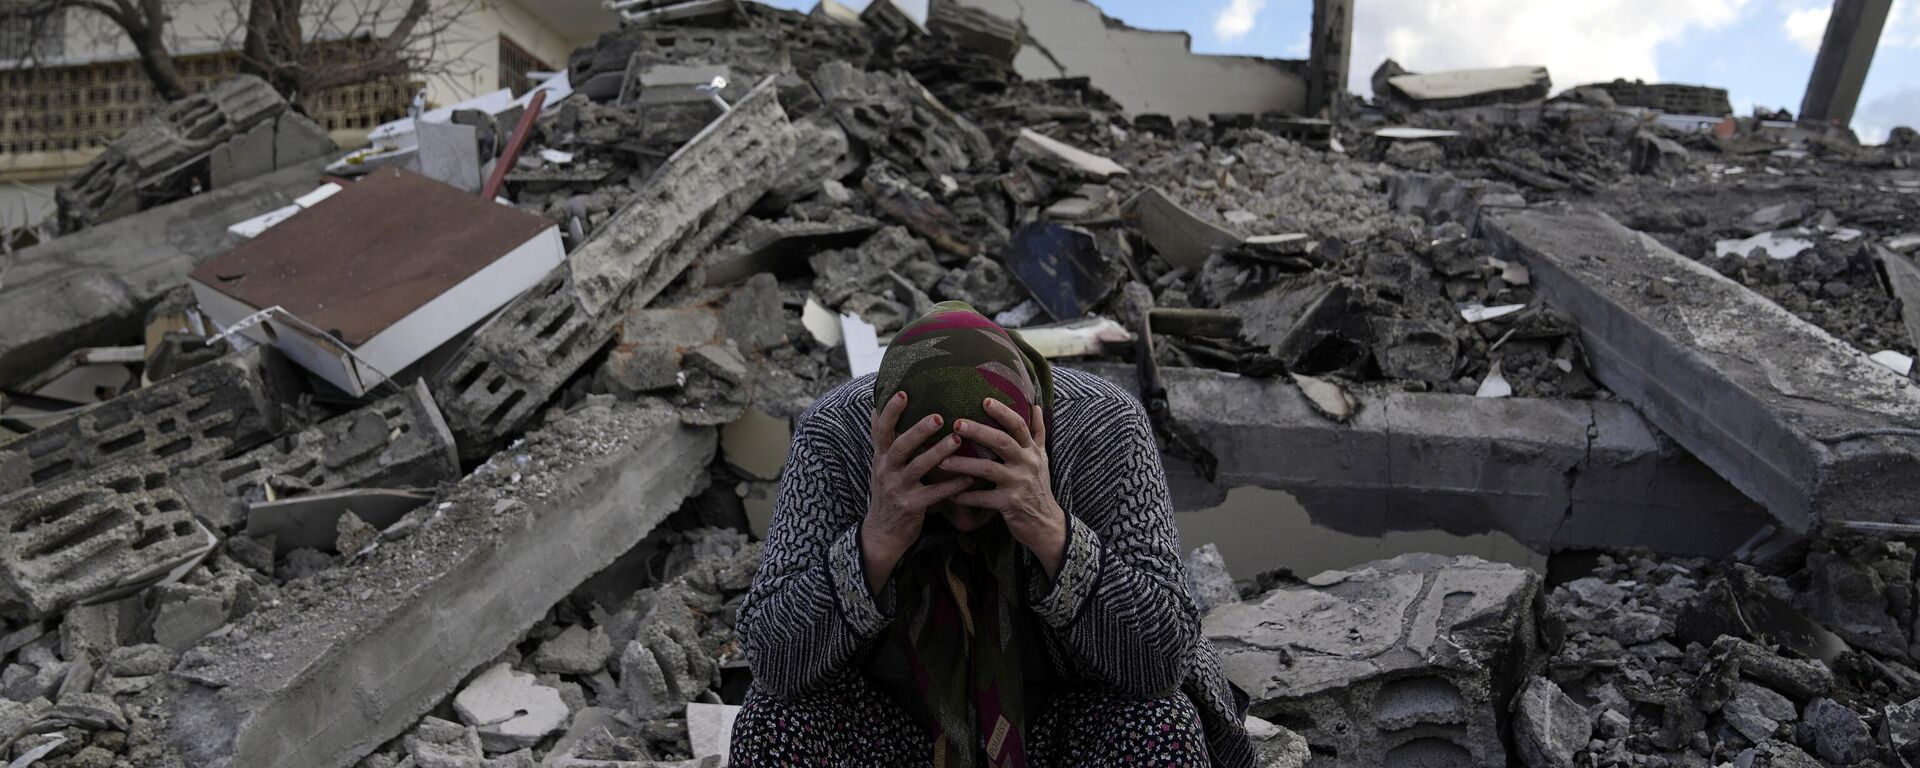 Kahramanmaraş merkezli, 10 ili etkileyen 7,7 ve 7,6 büyüklüğündeki deprem, Osmaniye'nin Nurdağı ilçesinde de yıkıma neden oldu. - Sputnik Türkiye, 1920, 10.02.2023